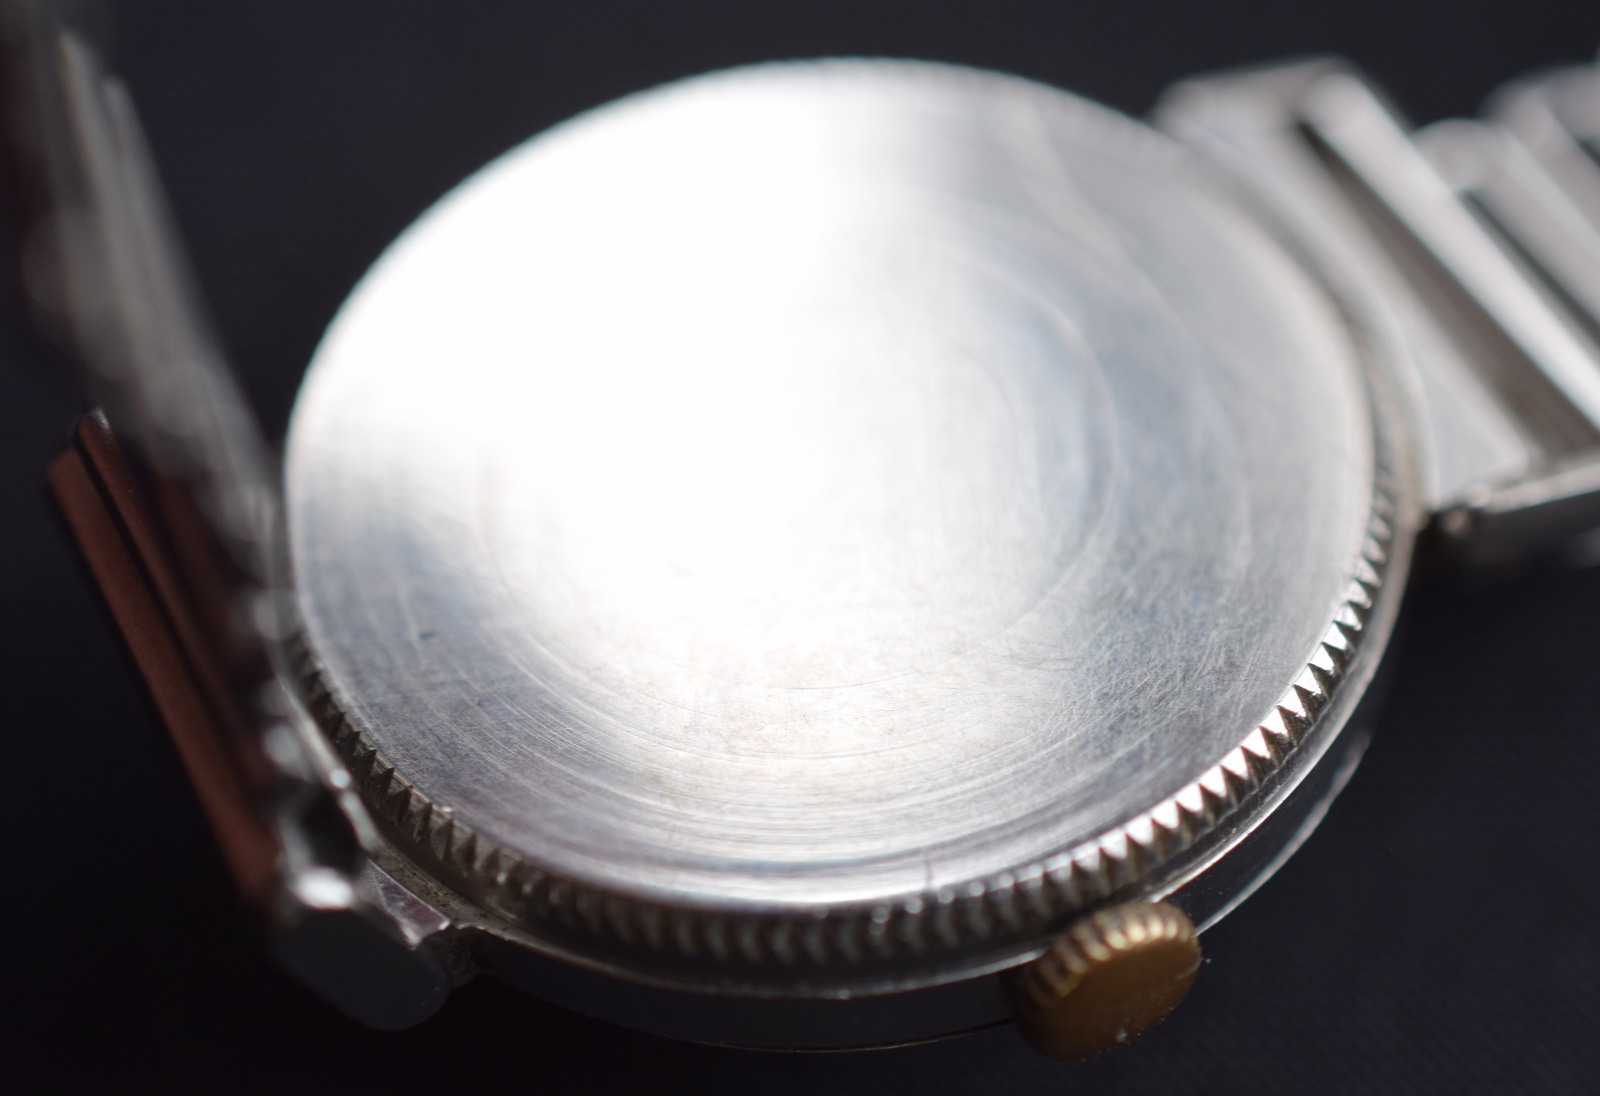 Girard Perregaux Vintage Wristwatch - Image 2 of 4